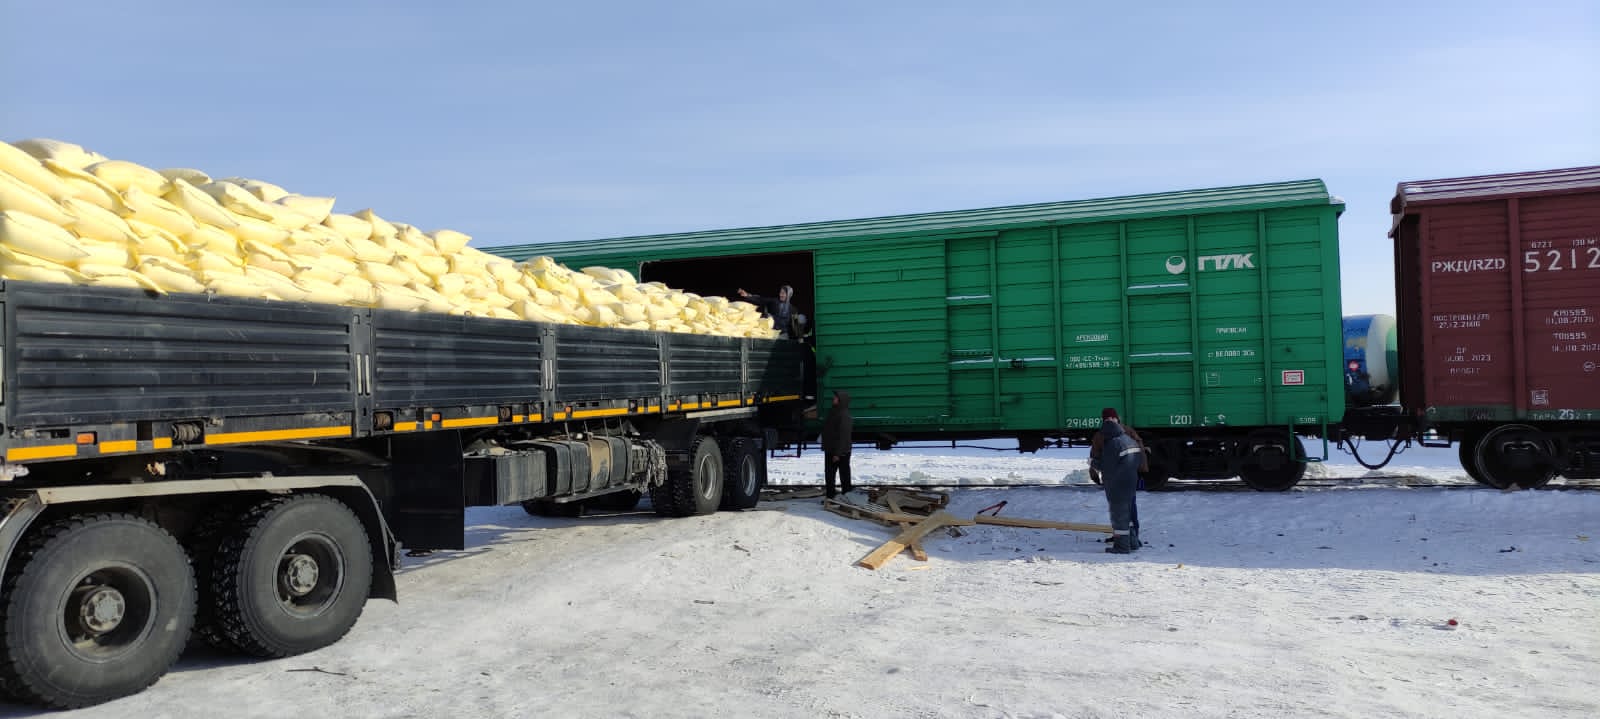 200 тонн муки доставили в Якутию по железной дороге